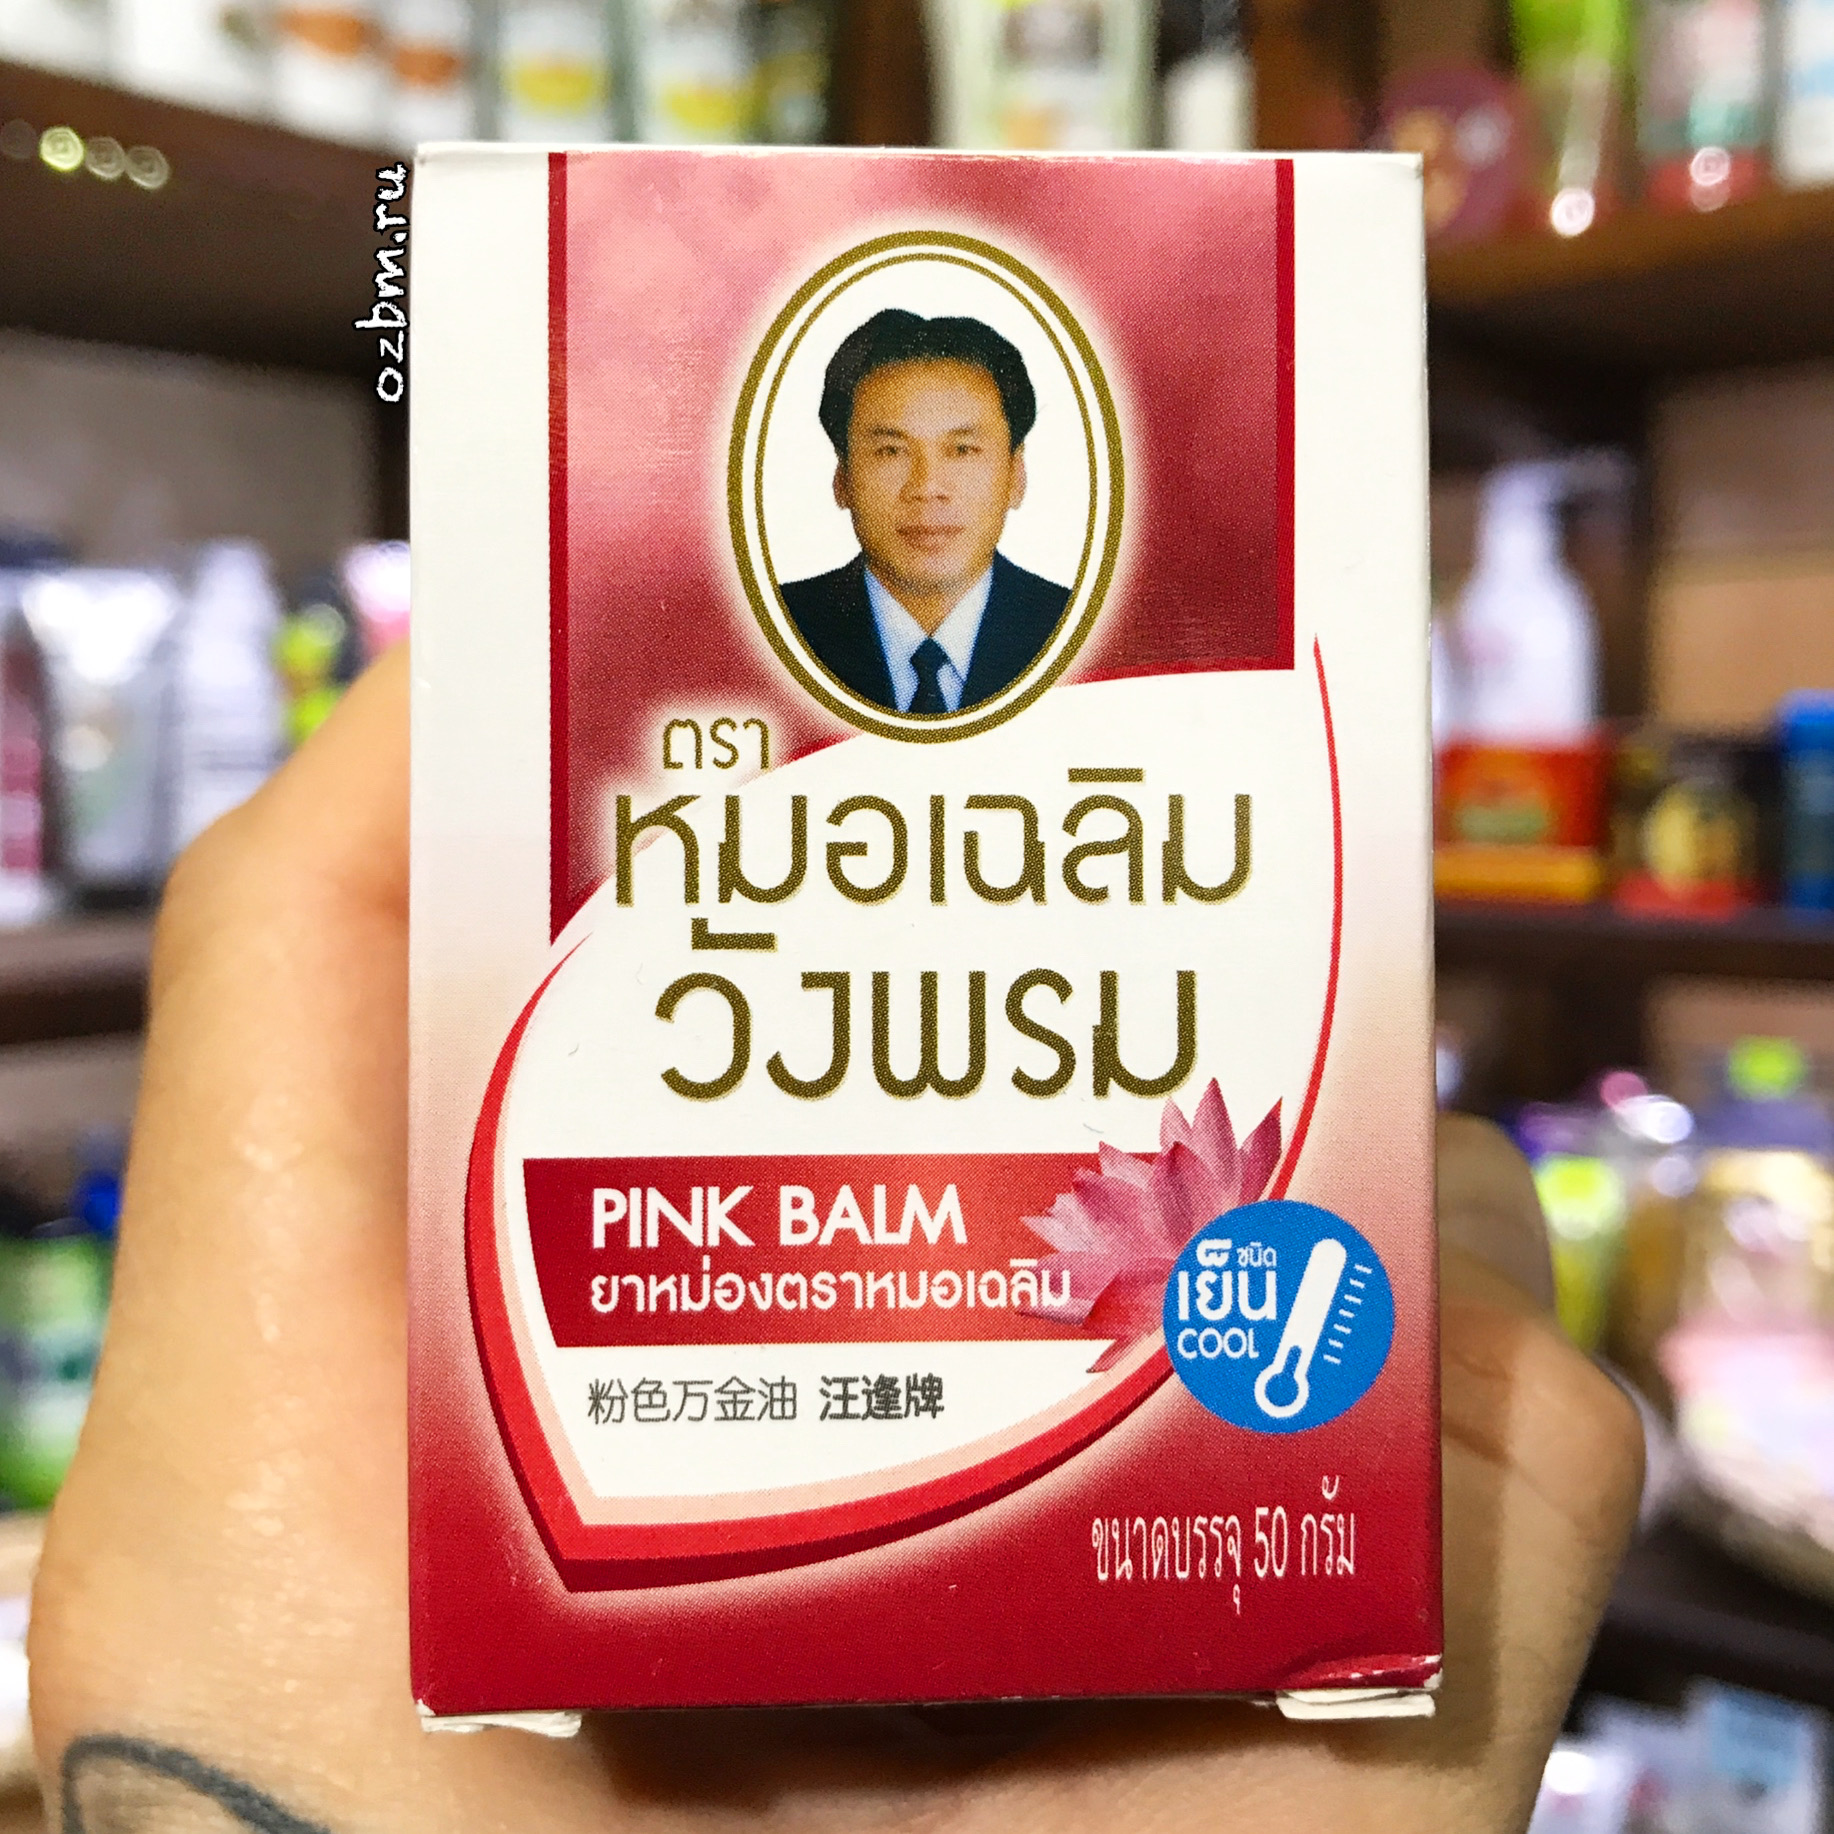 Тайский лечебный розовый бальзам Вангпром с лотосом WANG PROM Pink Balm 50 мл. таиланд